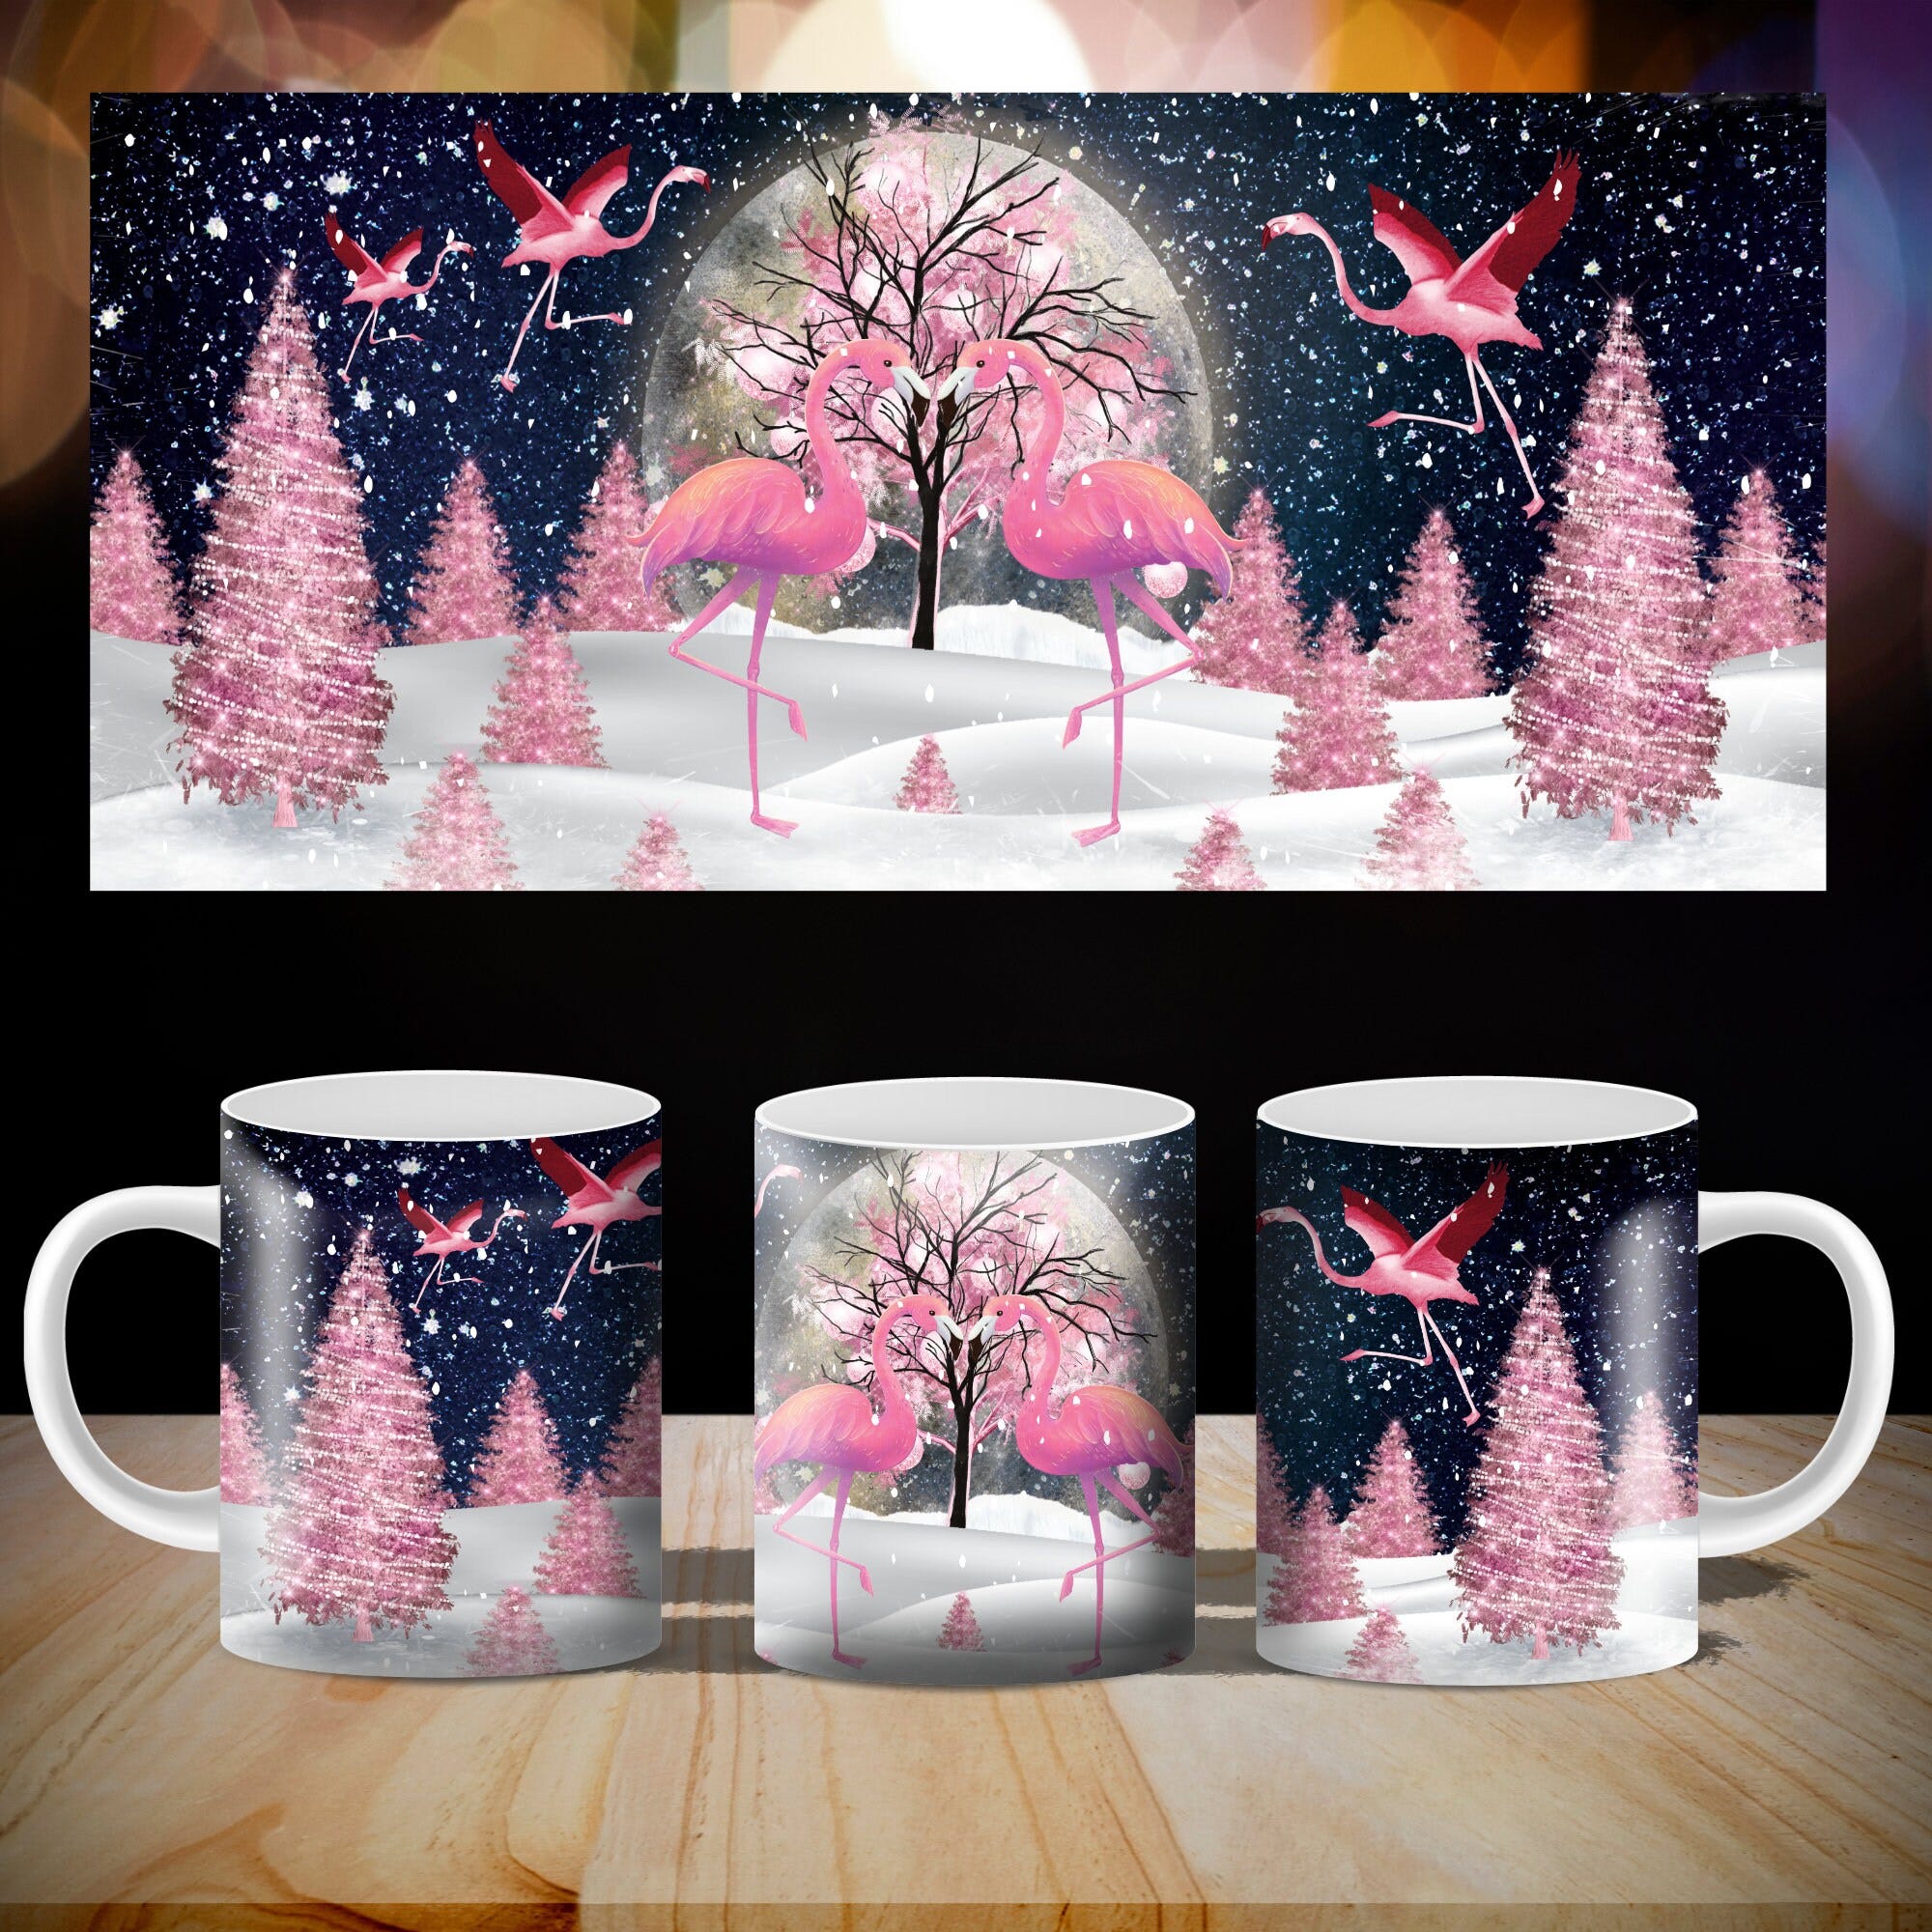 Flamingo Mug Sublimation Design Coffee Mug 11oz With Flamingo Pink Christmas Tree for press and shrink full wrap Mug PNG File Download